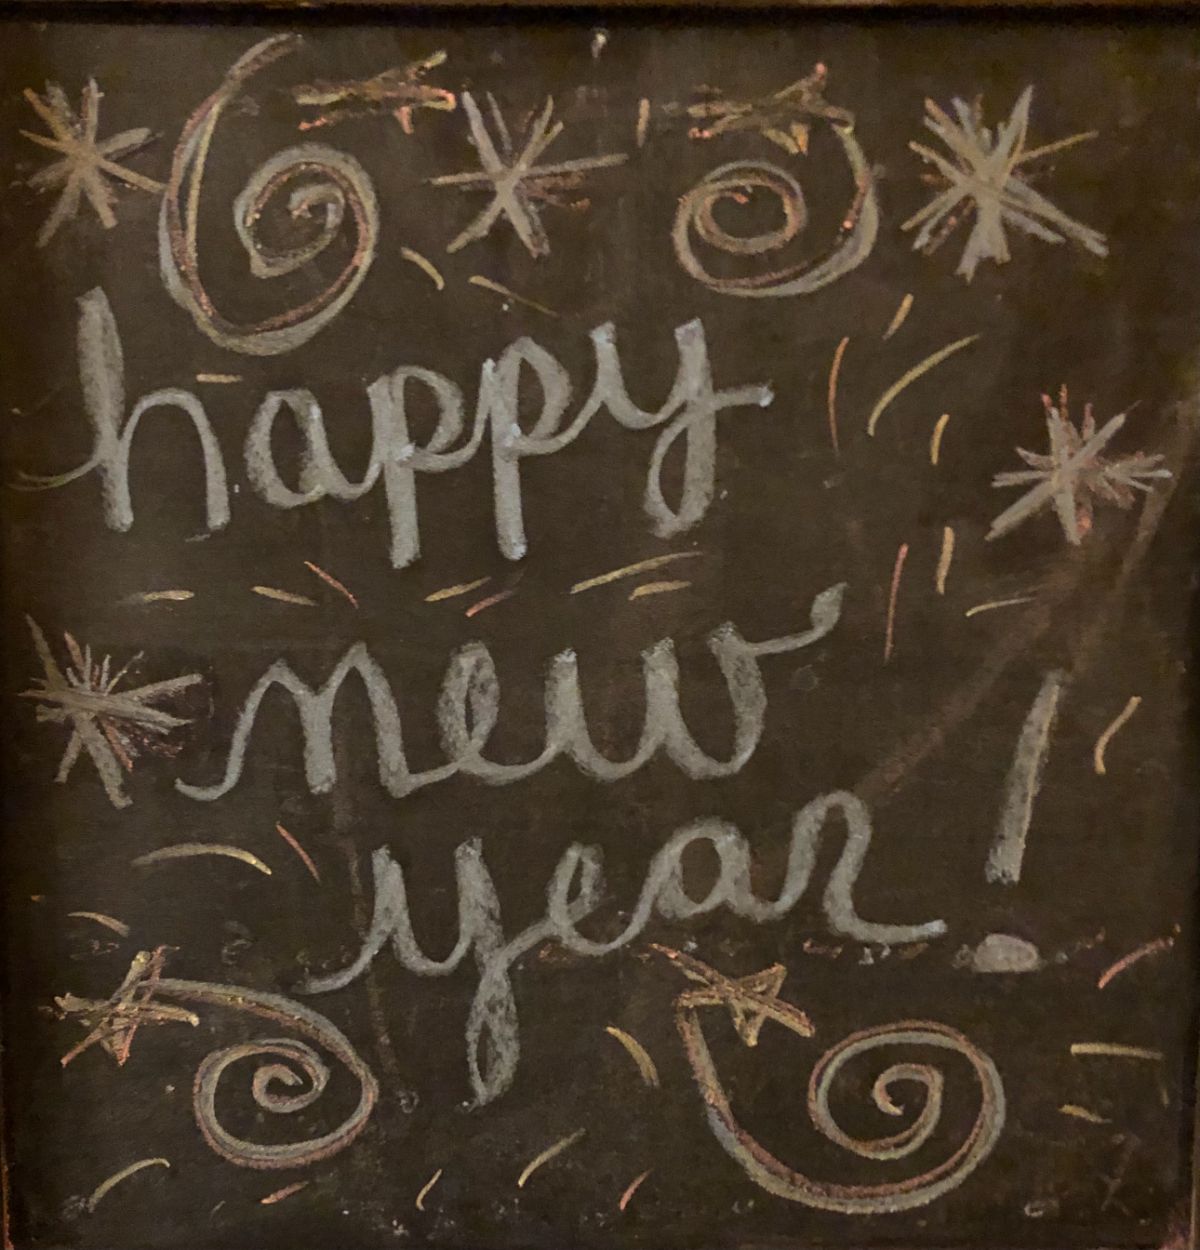 Happy New Year written on a chalk board